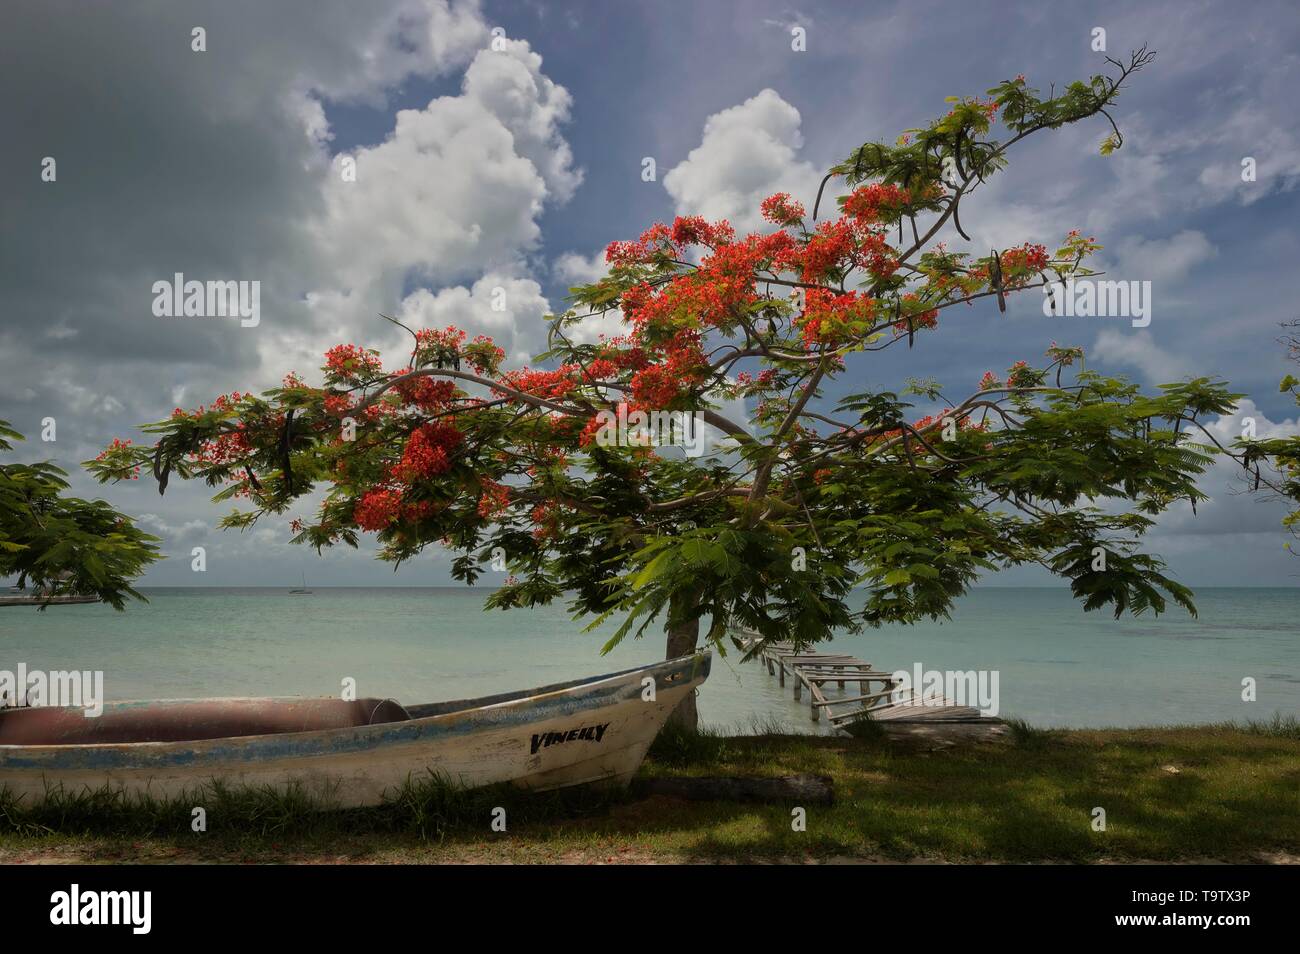 Bateau à arbre flamboyant (Delonix regia) sous un ciel nuageux, la baie de Chetumal, mer des Caraïbes, district de Corozal, Belize Banque D'Images